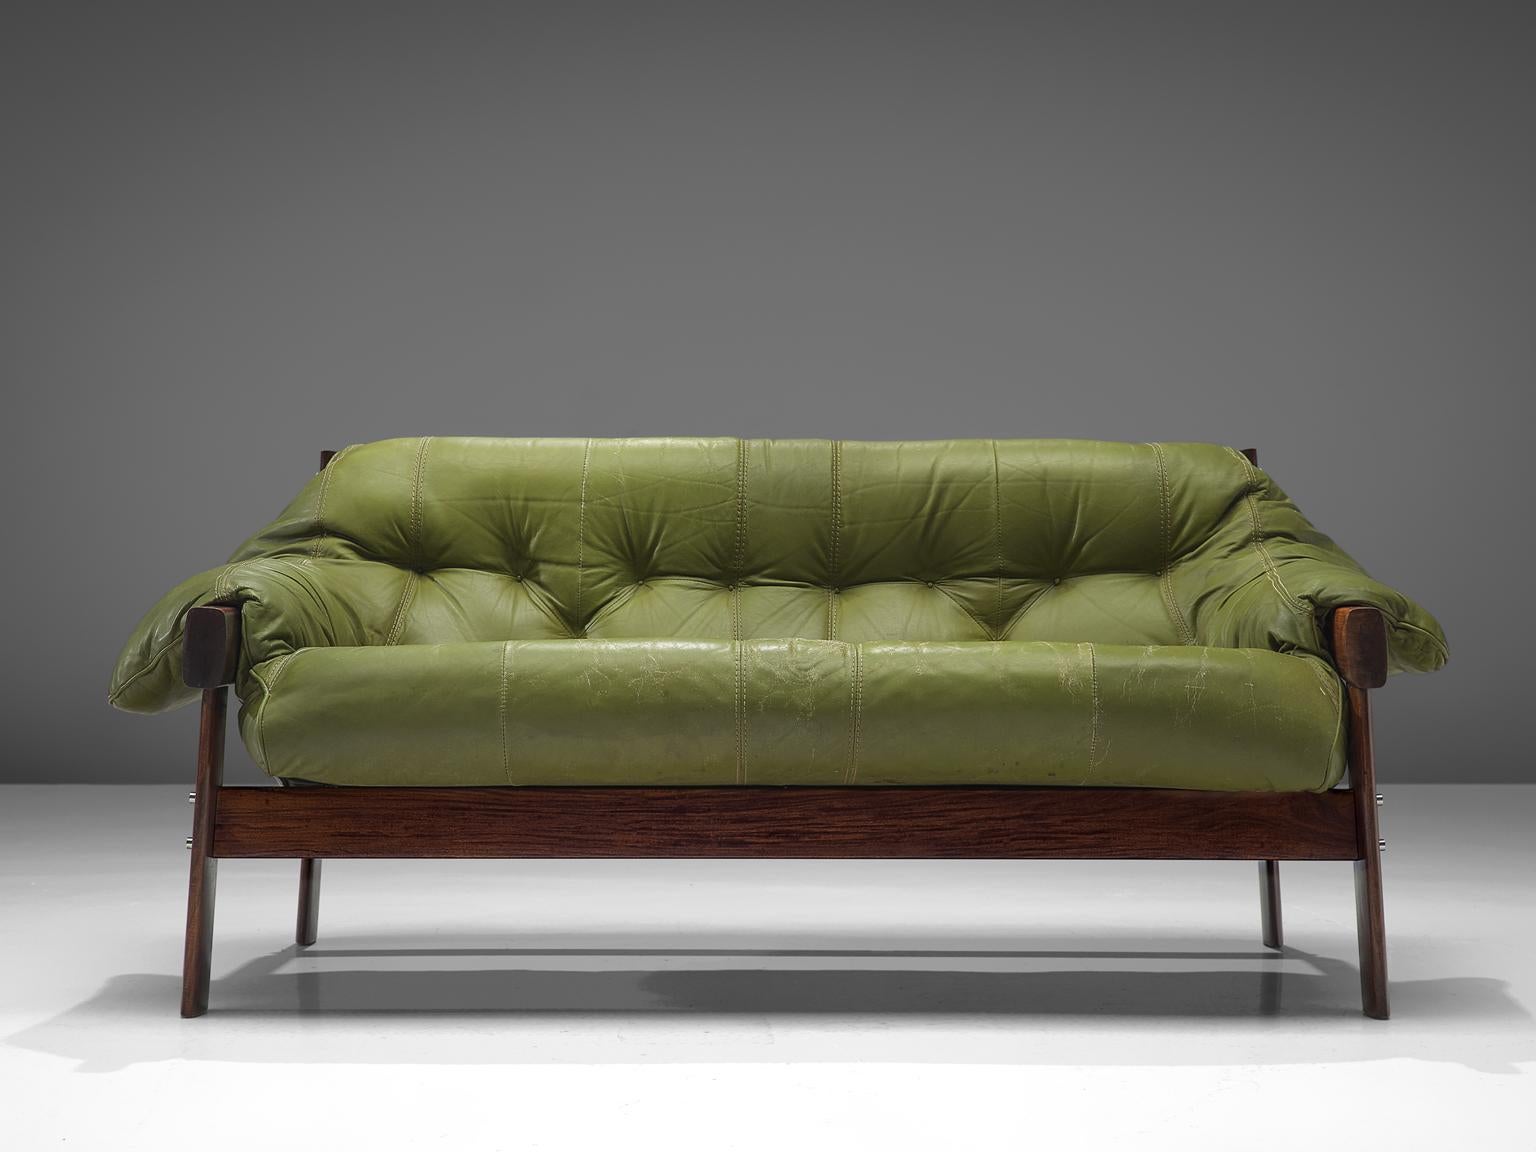 Percival Lafer:: zweisitziges Sofa aus Leder:: Palisander und Metall:: Brasilien:: Ende der 1960er Jahre

Großes:: voluminöses Sofa des brasilianischen Designers Percival Lafer. Dieses Set besteht aus einem massiven dunklen Holzsockel mit